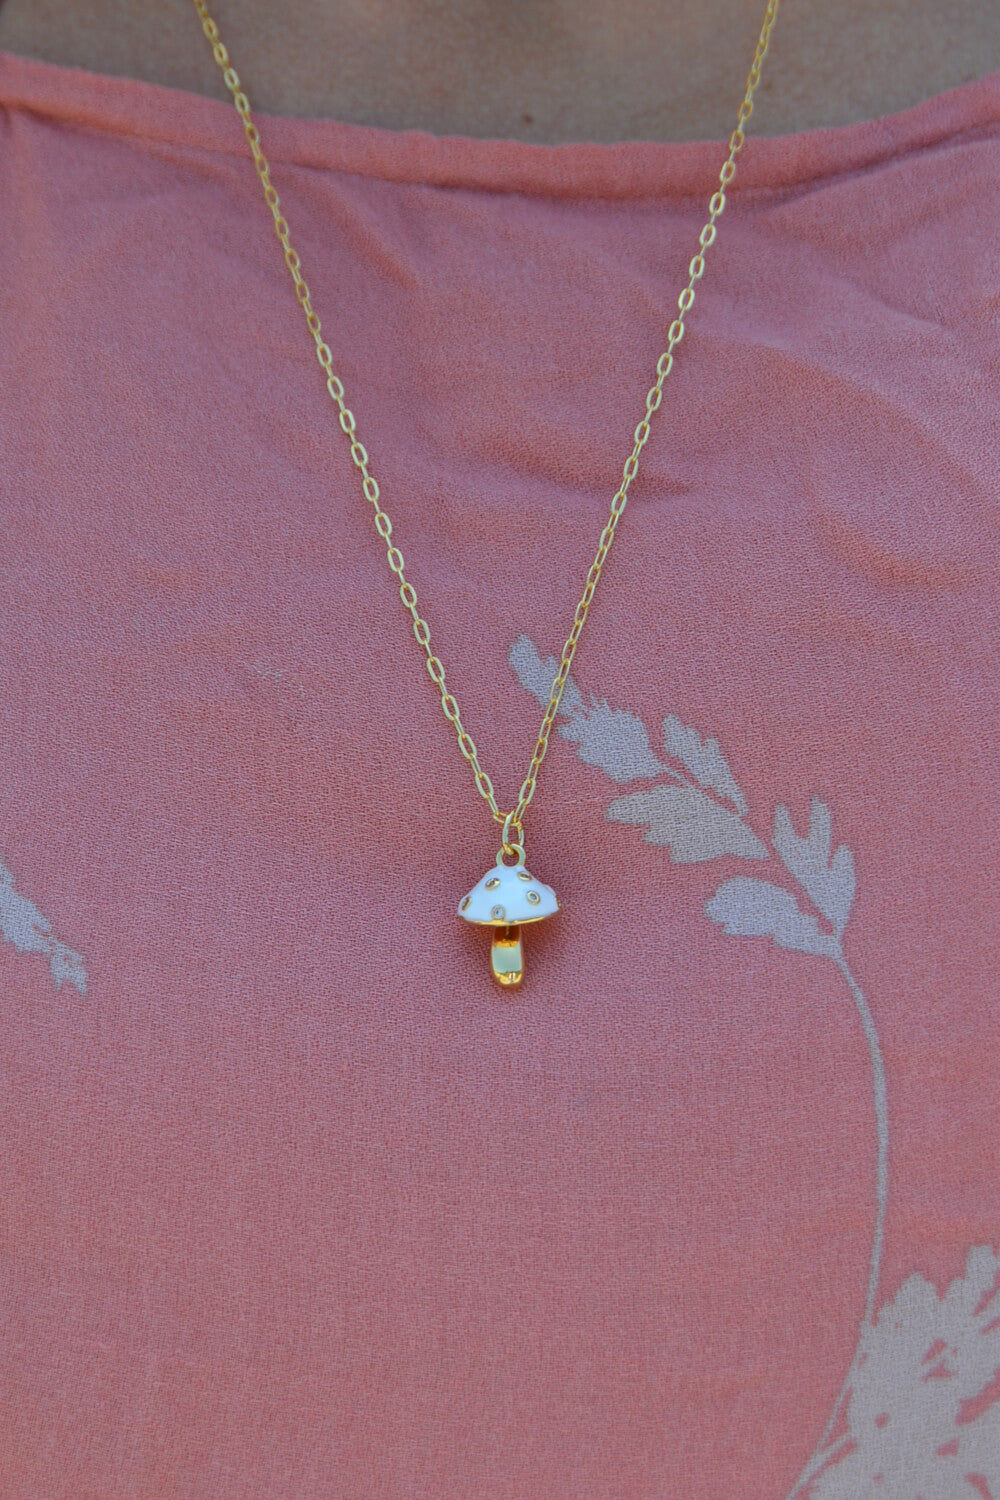 magic mushroom necklace - gold white